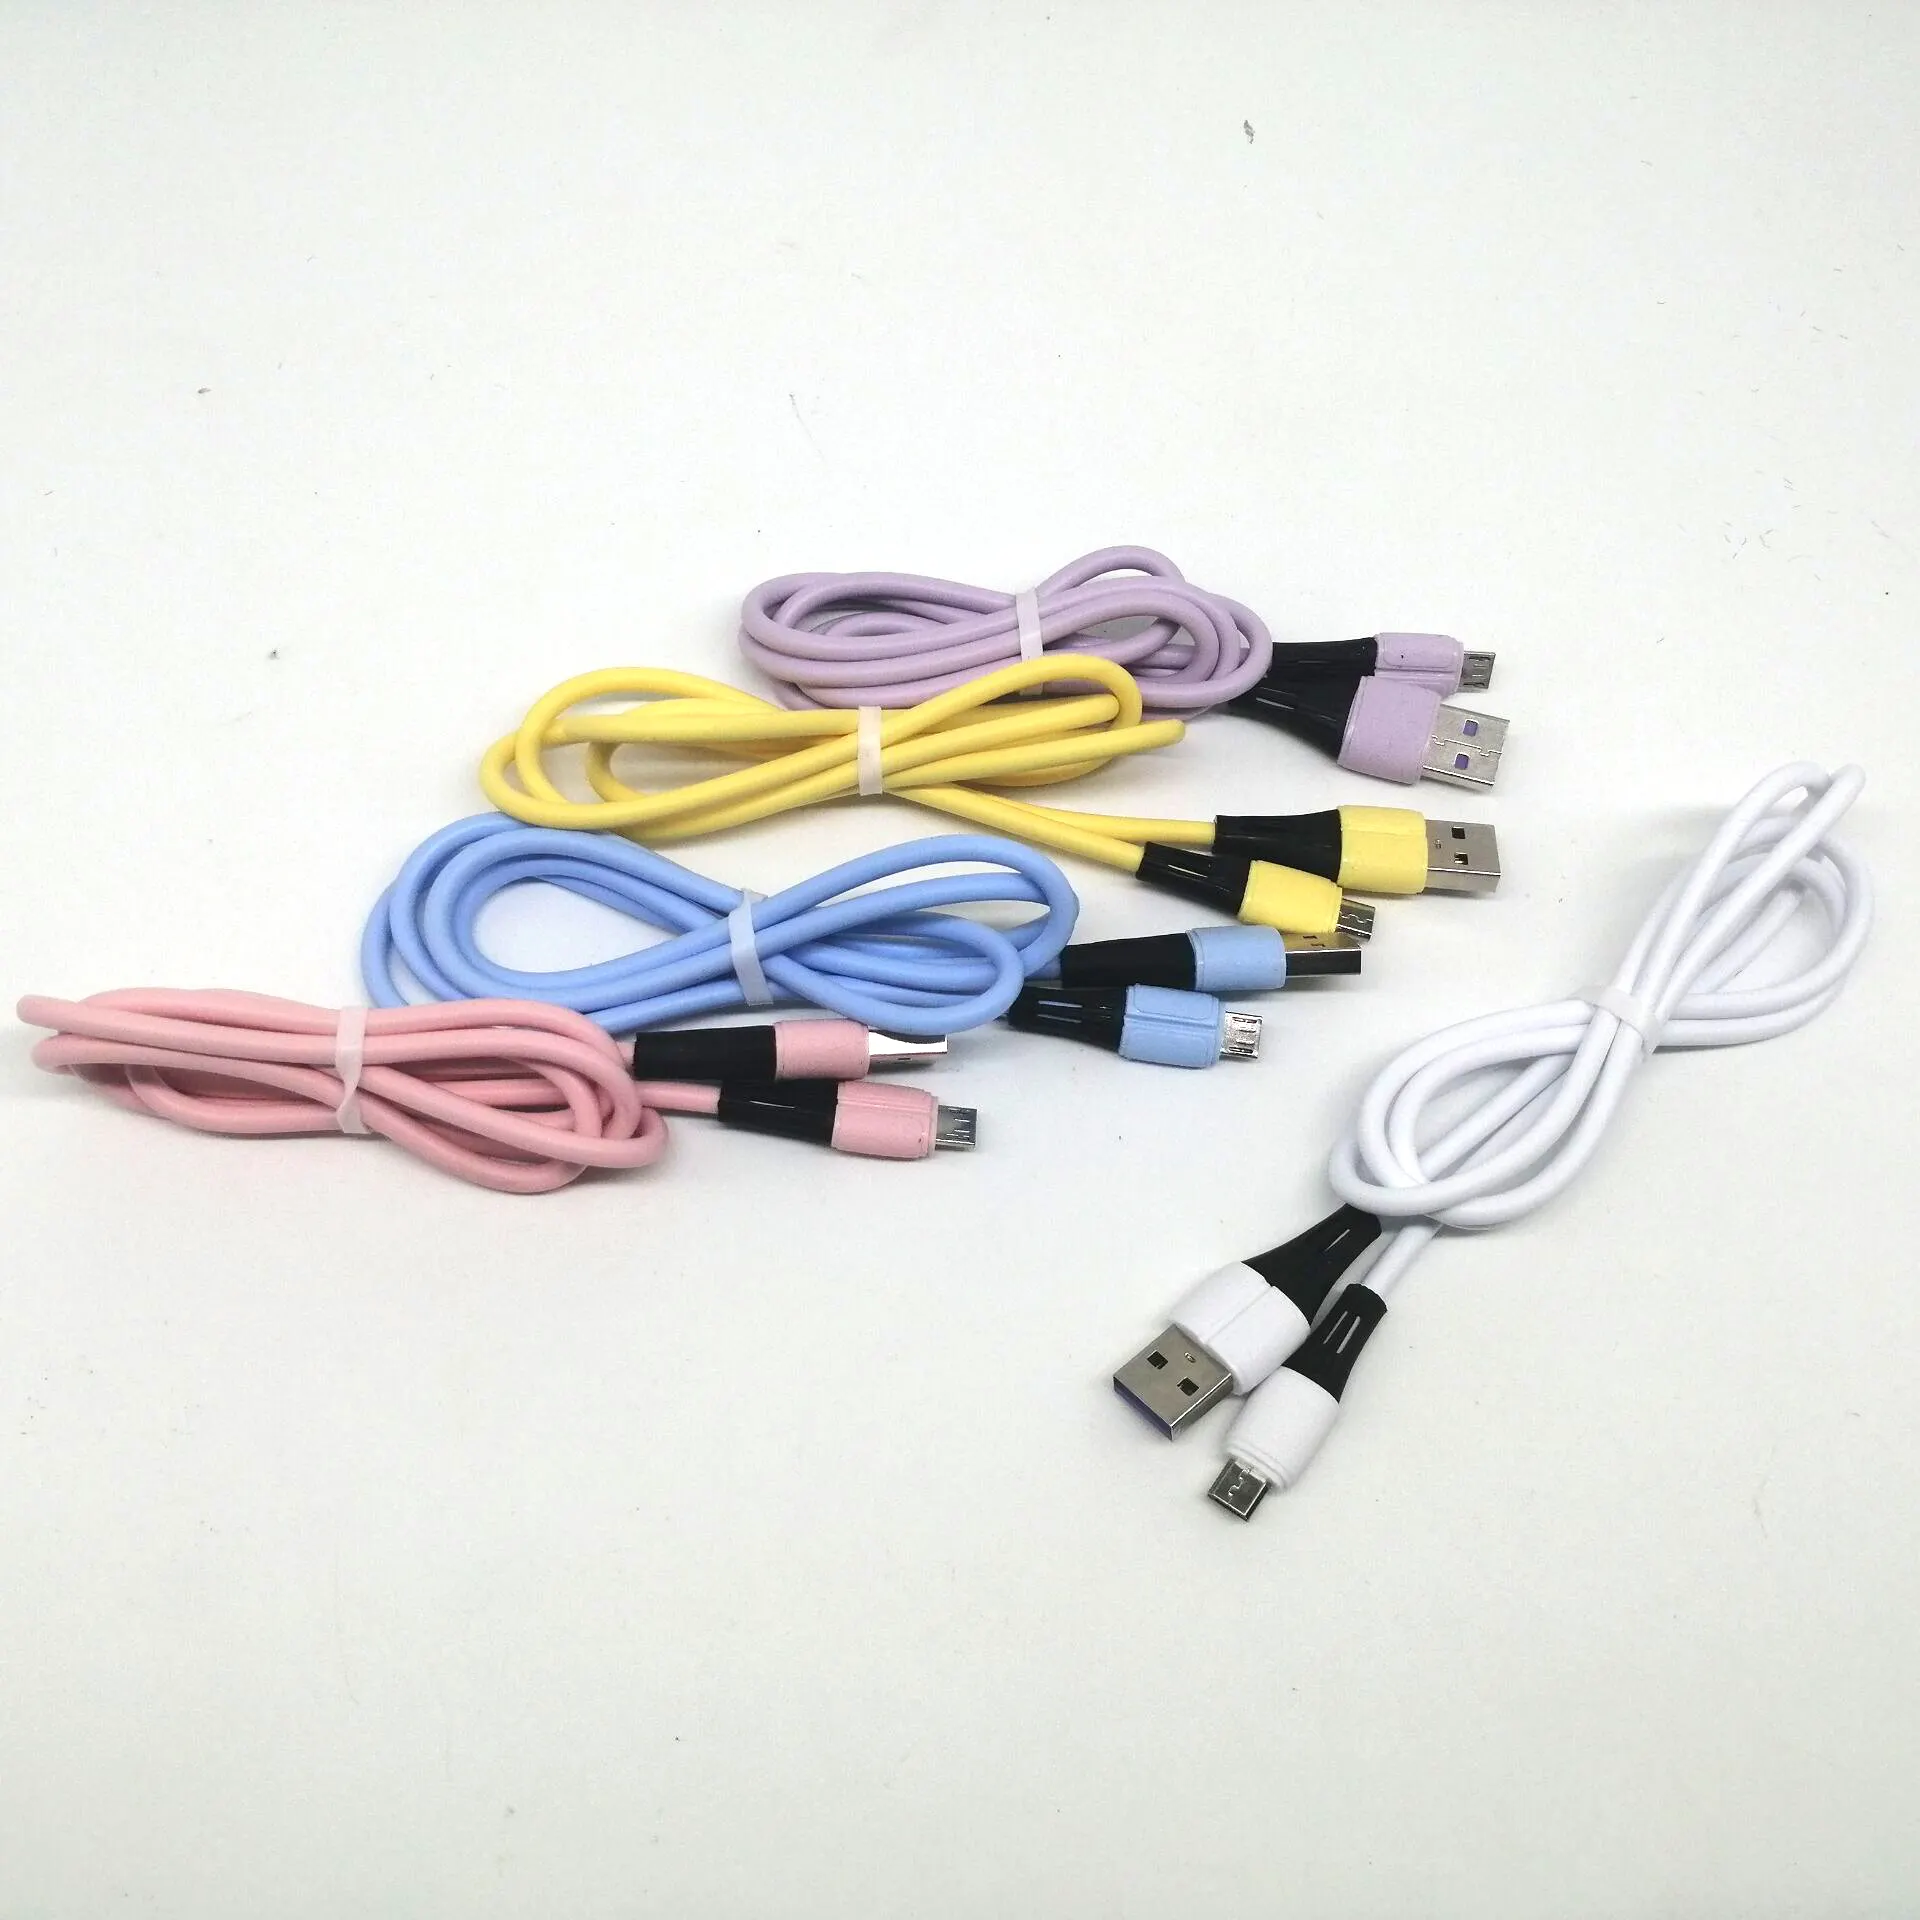 Hohe Qualität und mehrere Farben können angepasst werden Weiches Silikon 1m Micro-USB-Kabel für iPhone Android Samsung